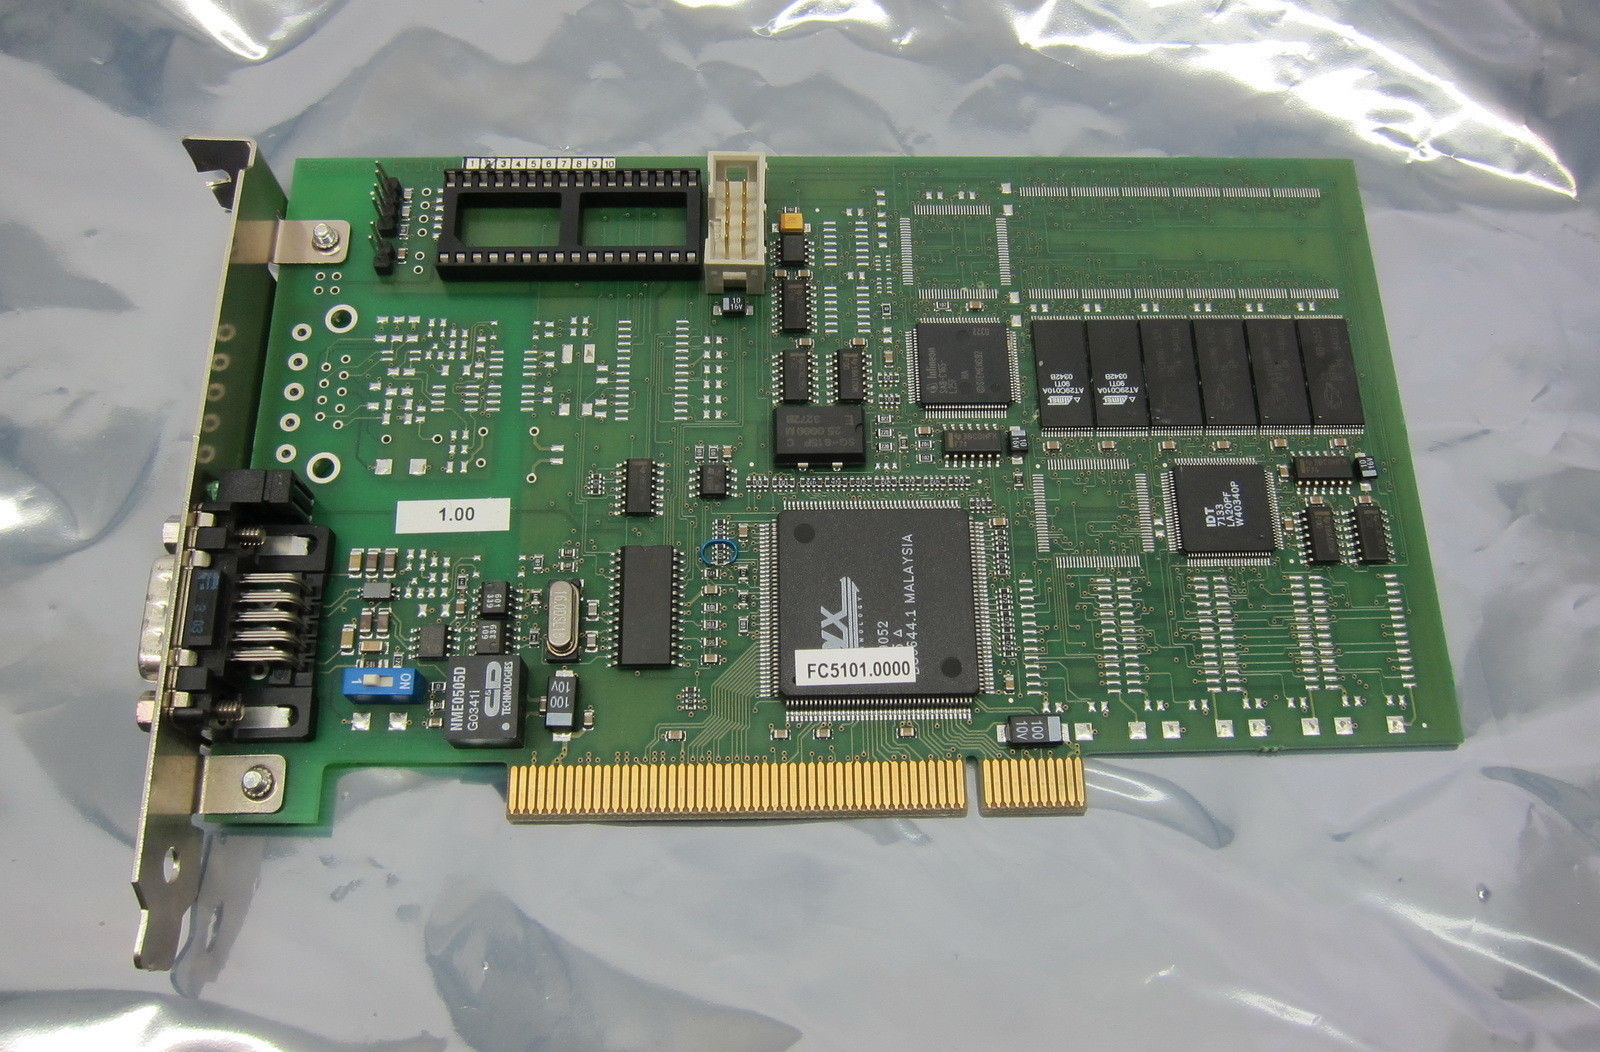 贝克霍夫FC5101 FC5101-0000 PCI CANopen 原装正品 现货供应 优惠价 BECKHOFF,FC5101-0000,贝克霍夫